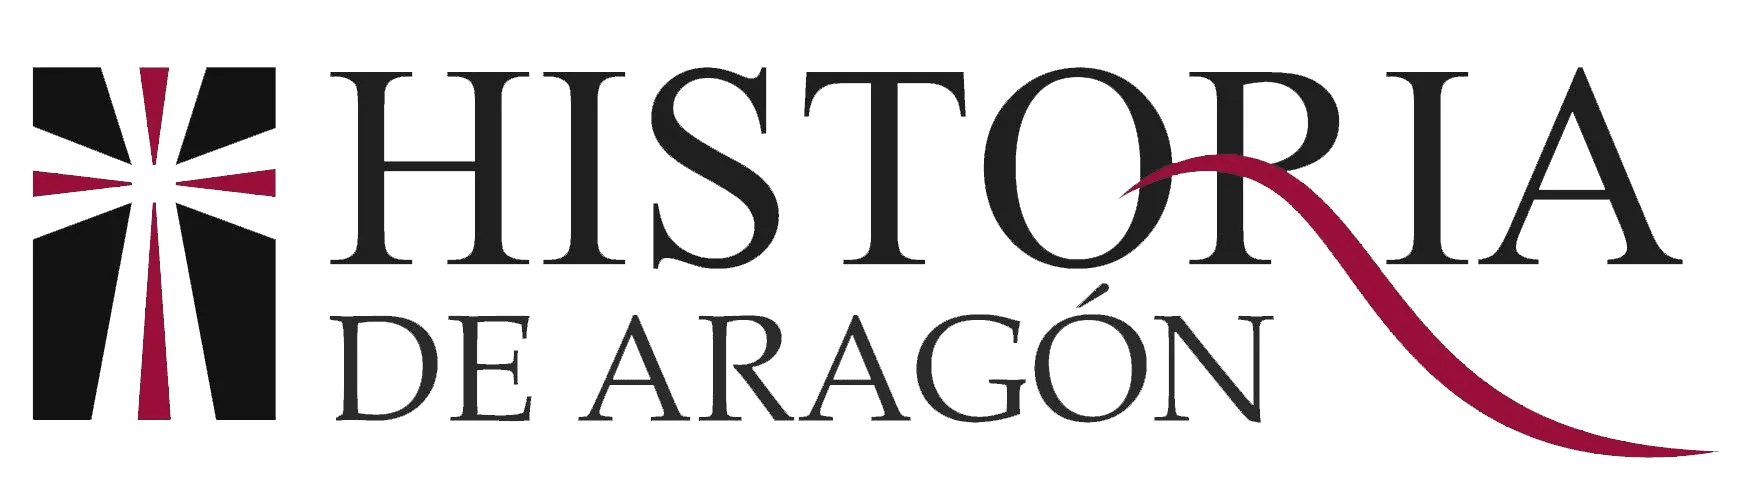 Historia de Aragón startup Unizar